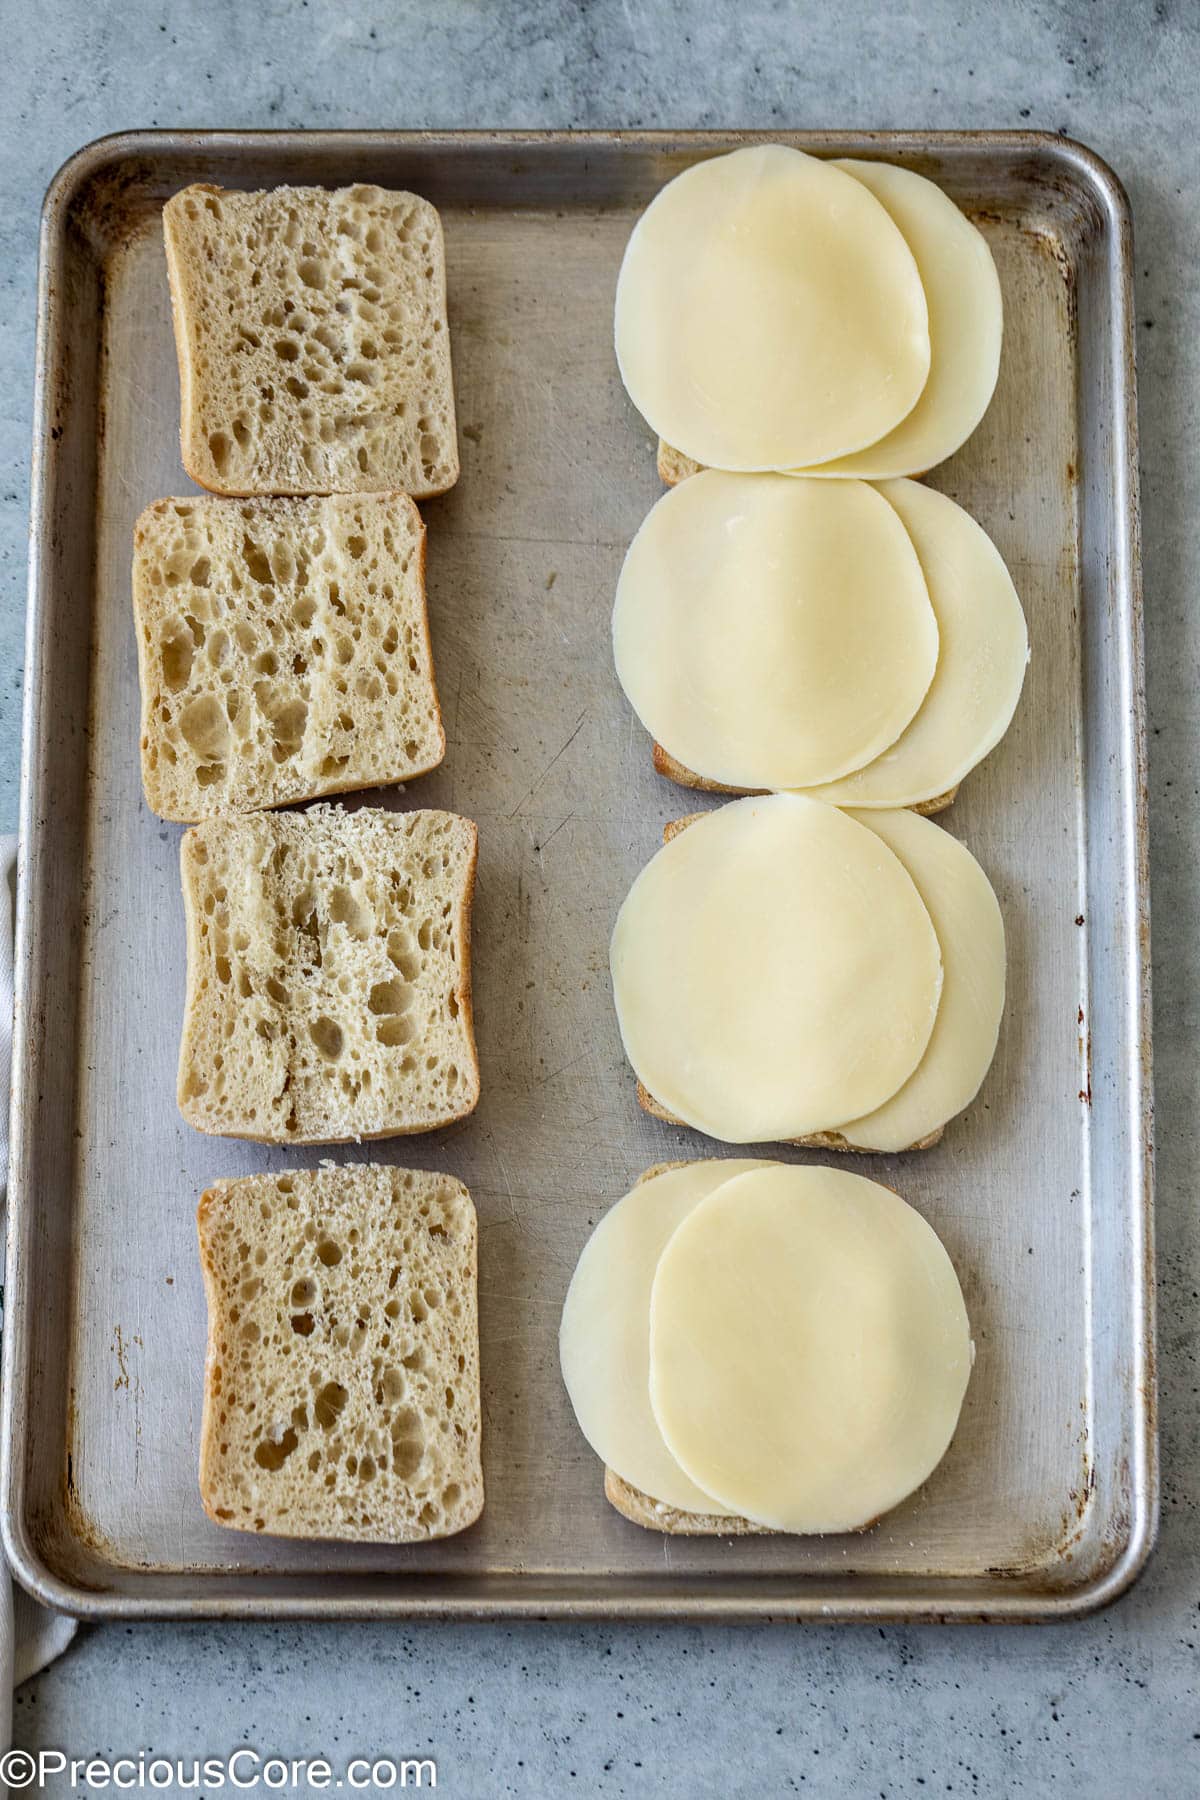 Ciabatta sandwich bread and cheese slices.